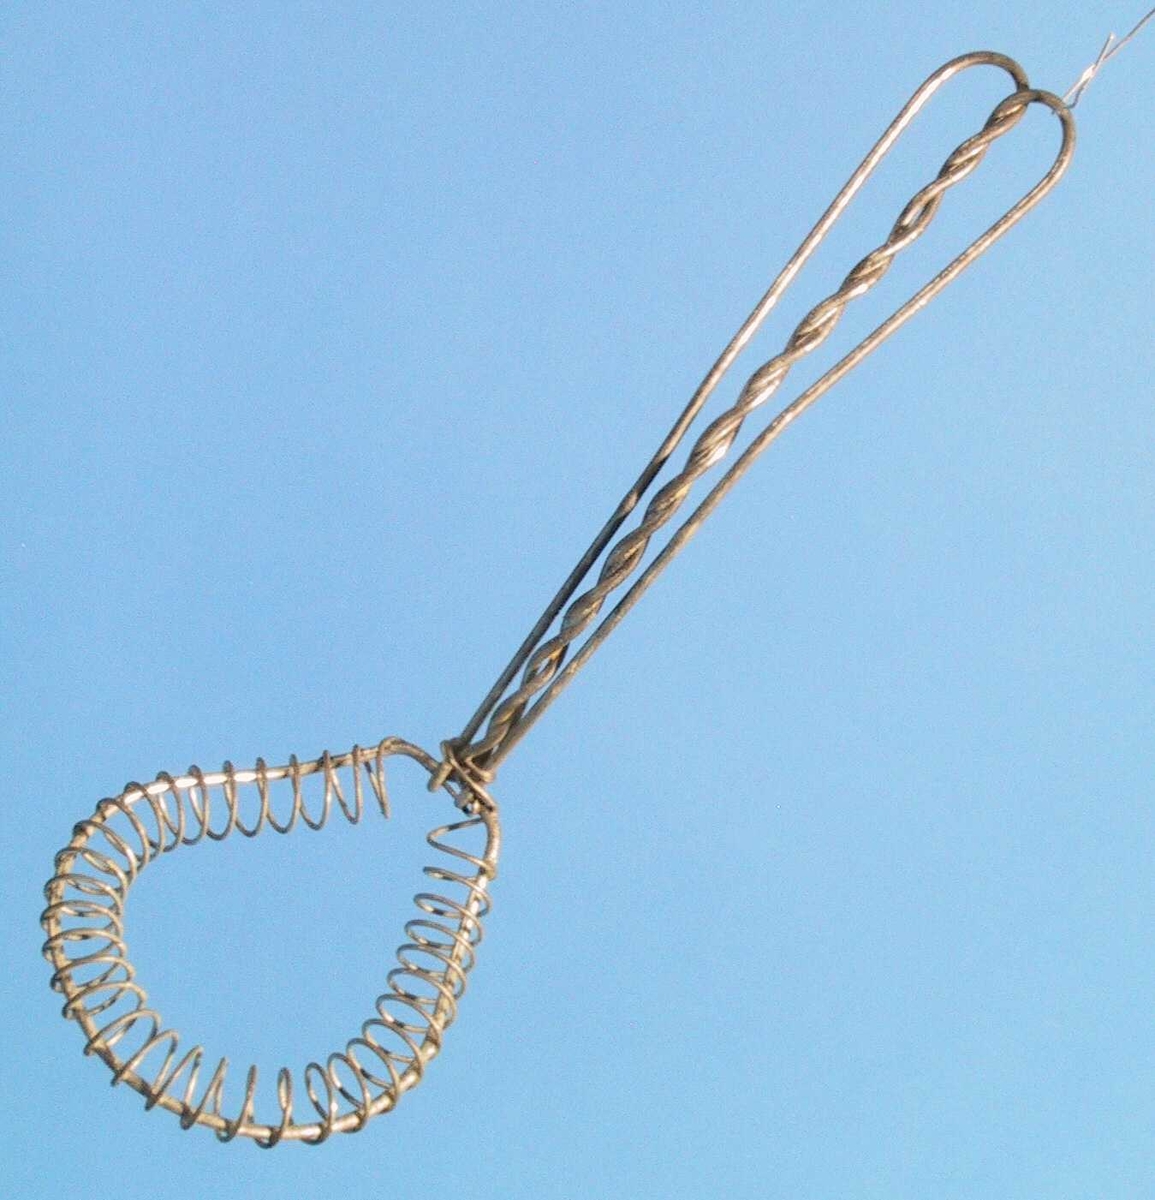 Spiralformet ståltråd omkring en tykkere tråd.